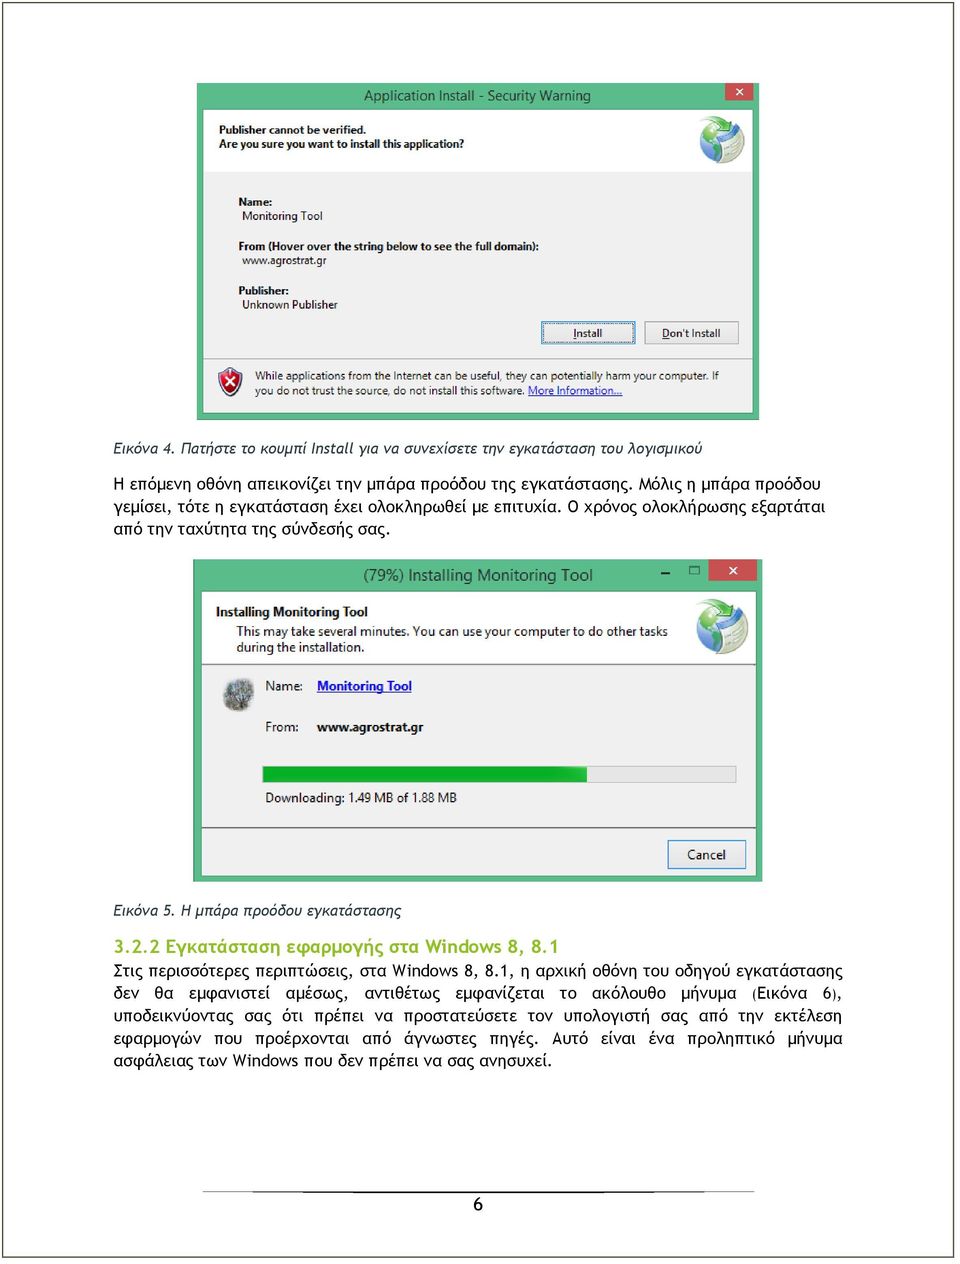 2 Εγκατάσταση εφαρμογής στα Windows 8, 8.1 Στις περισσότερες περιπτώσεις, στα Windows 8, 8.